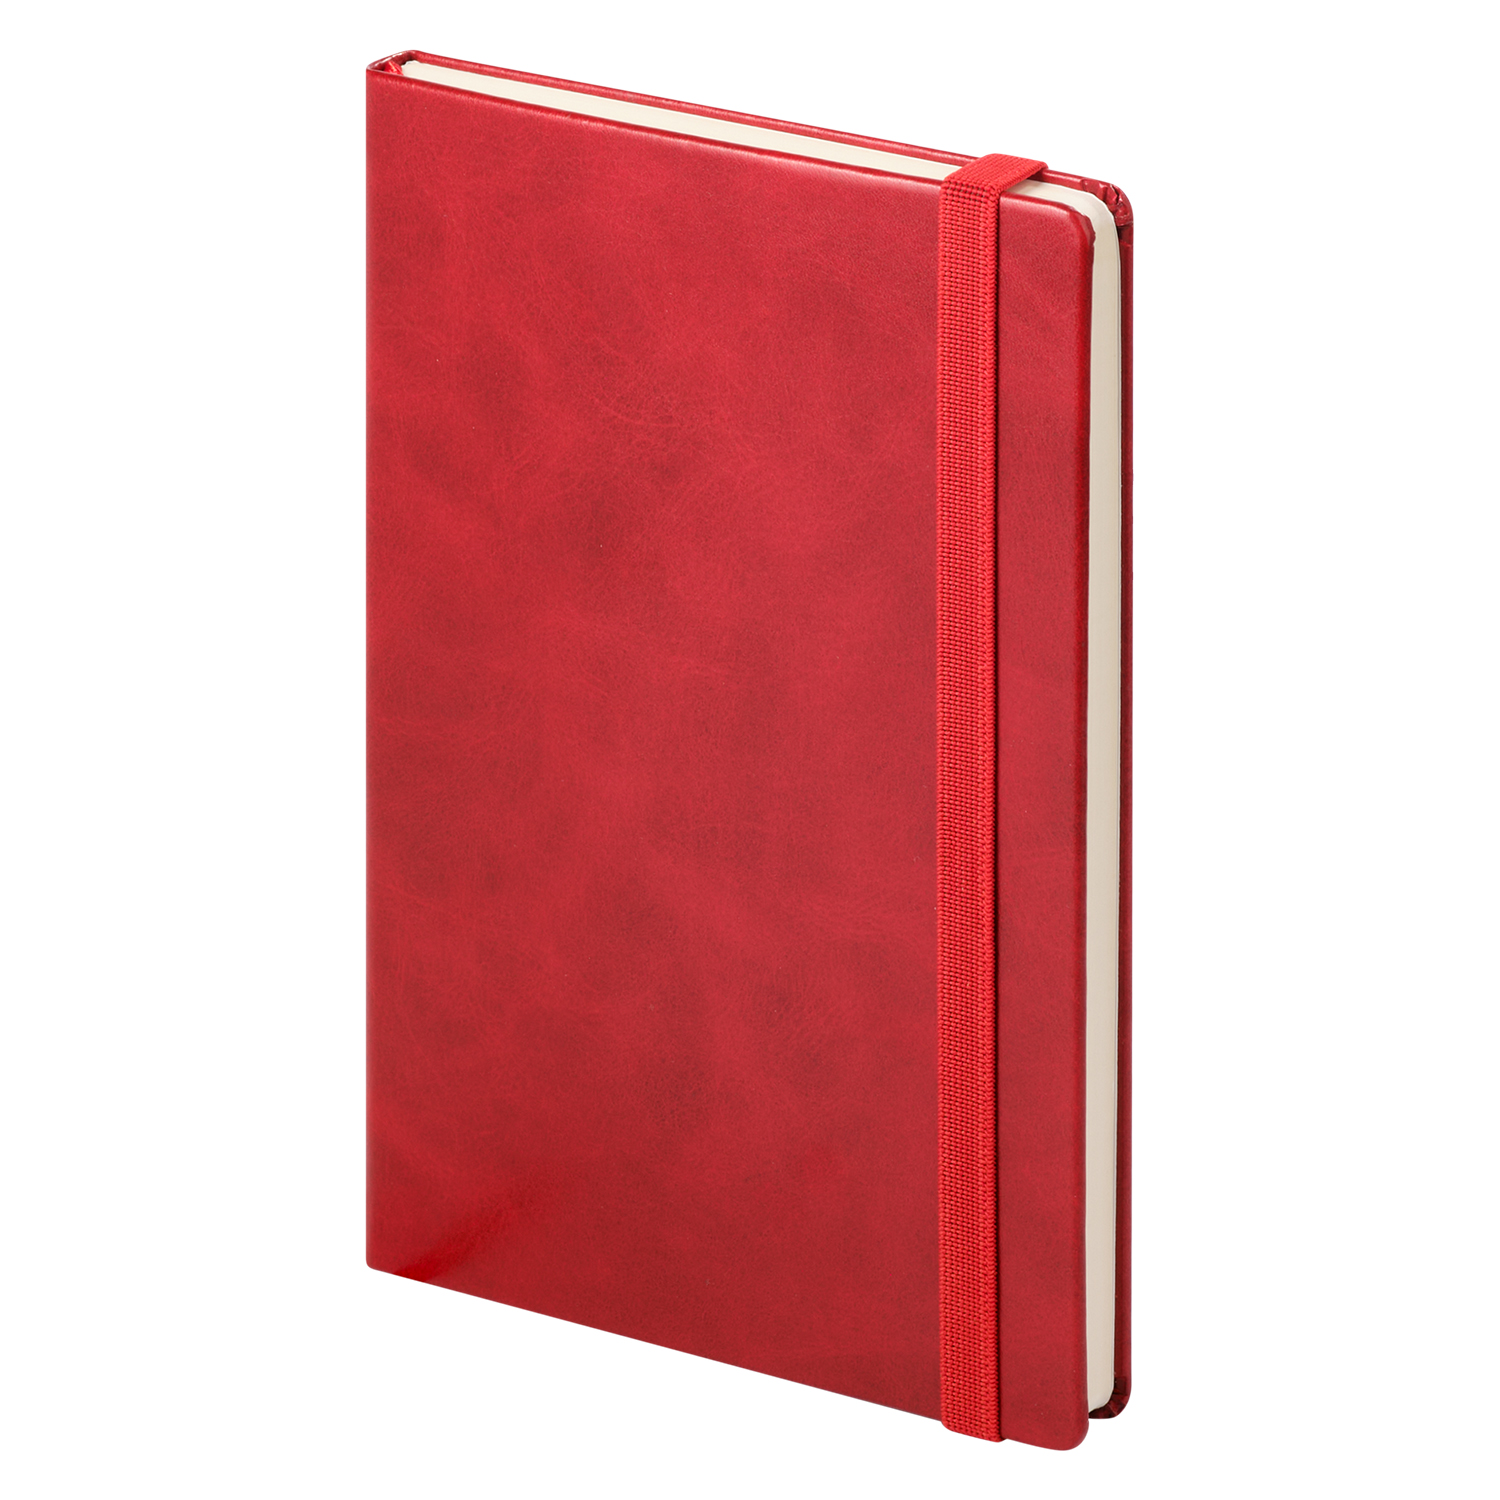 Ежедневник недатированный Vegas Btobook, красный (без упаковки, без стикера)